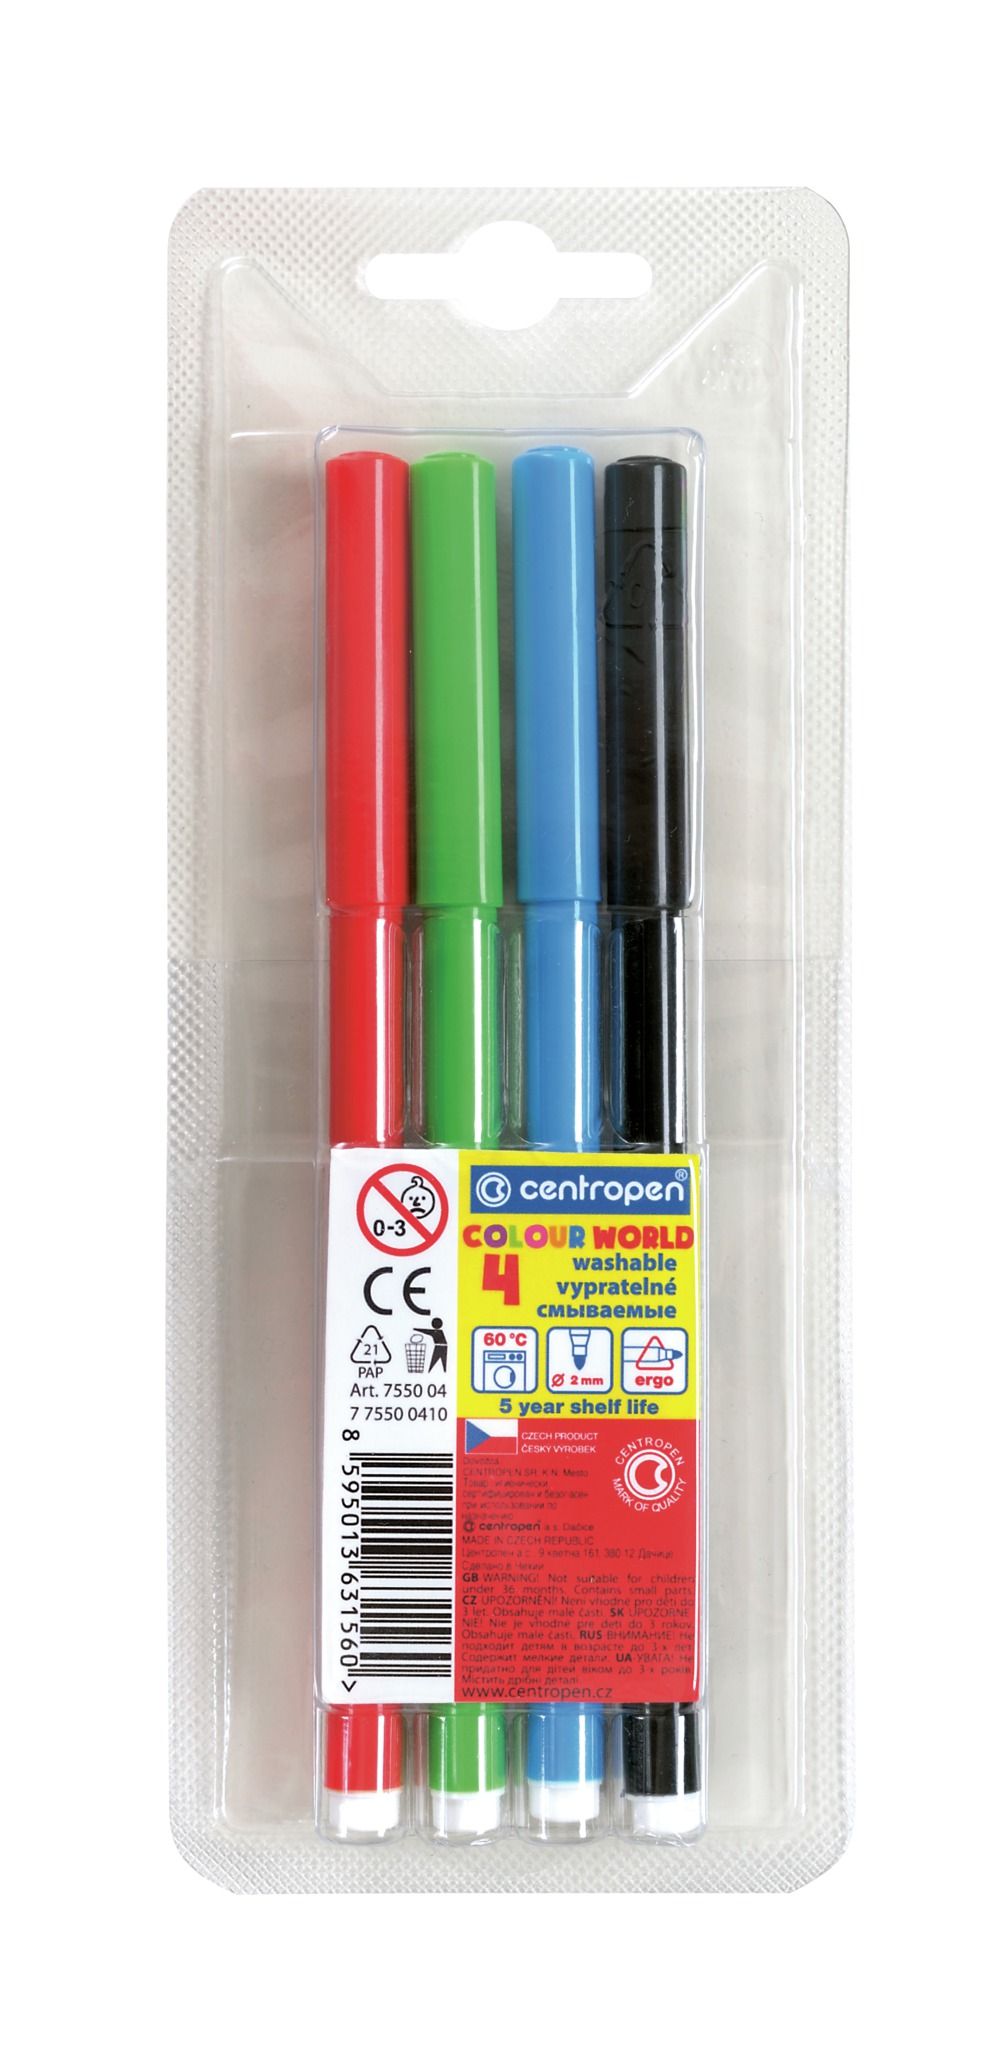 Centropen ECO 2560 Markers Set, 12 Colors